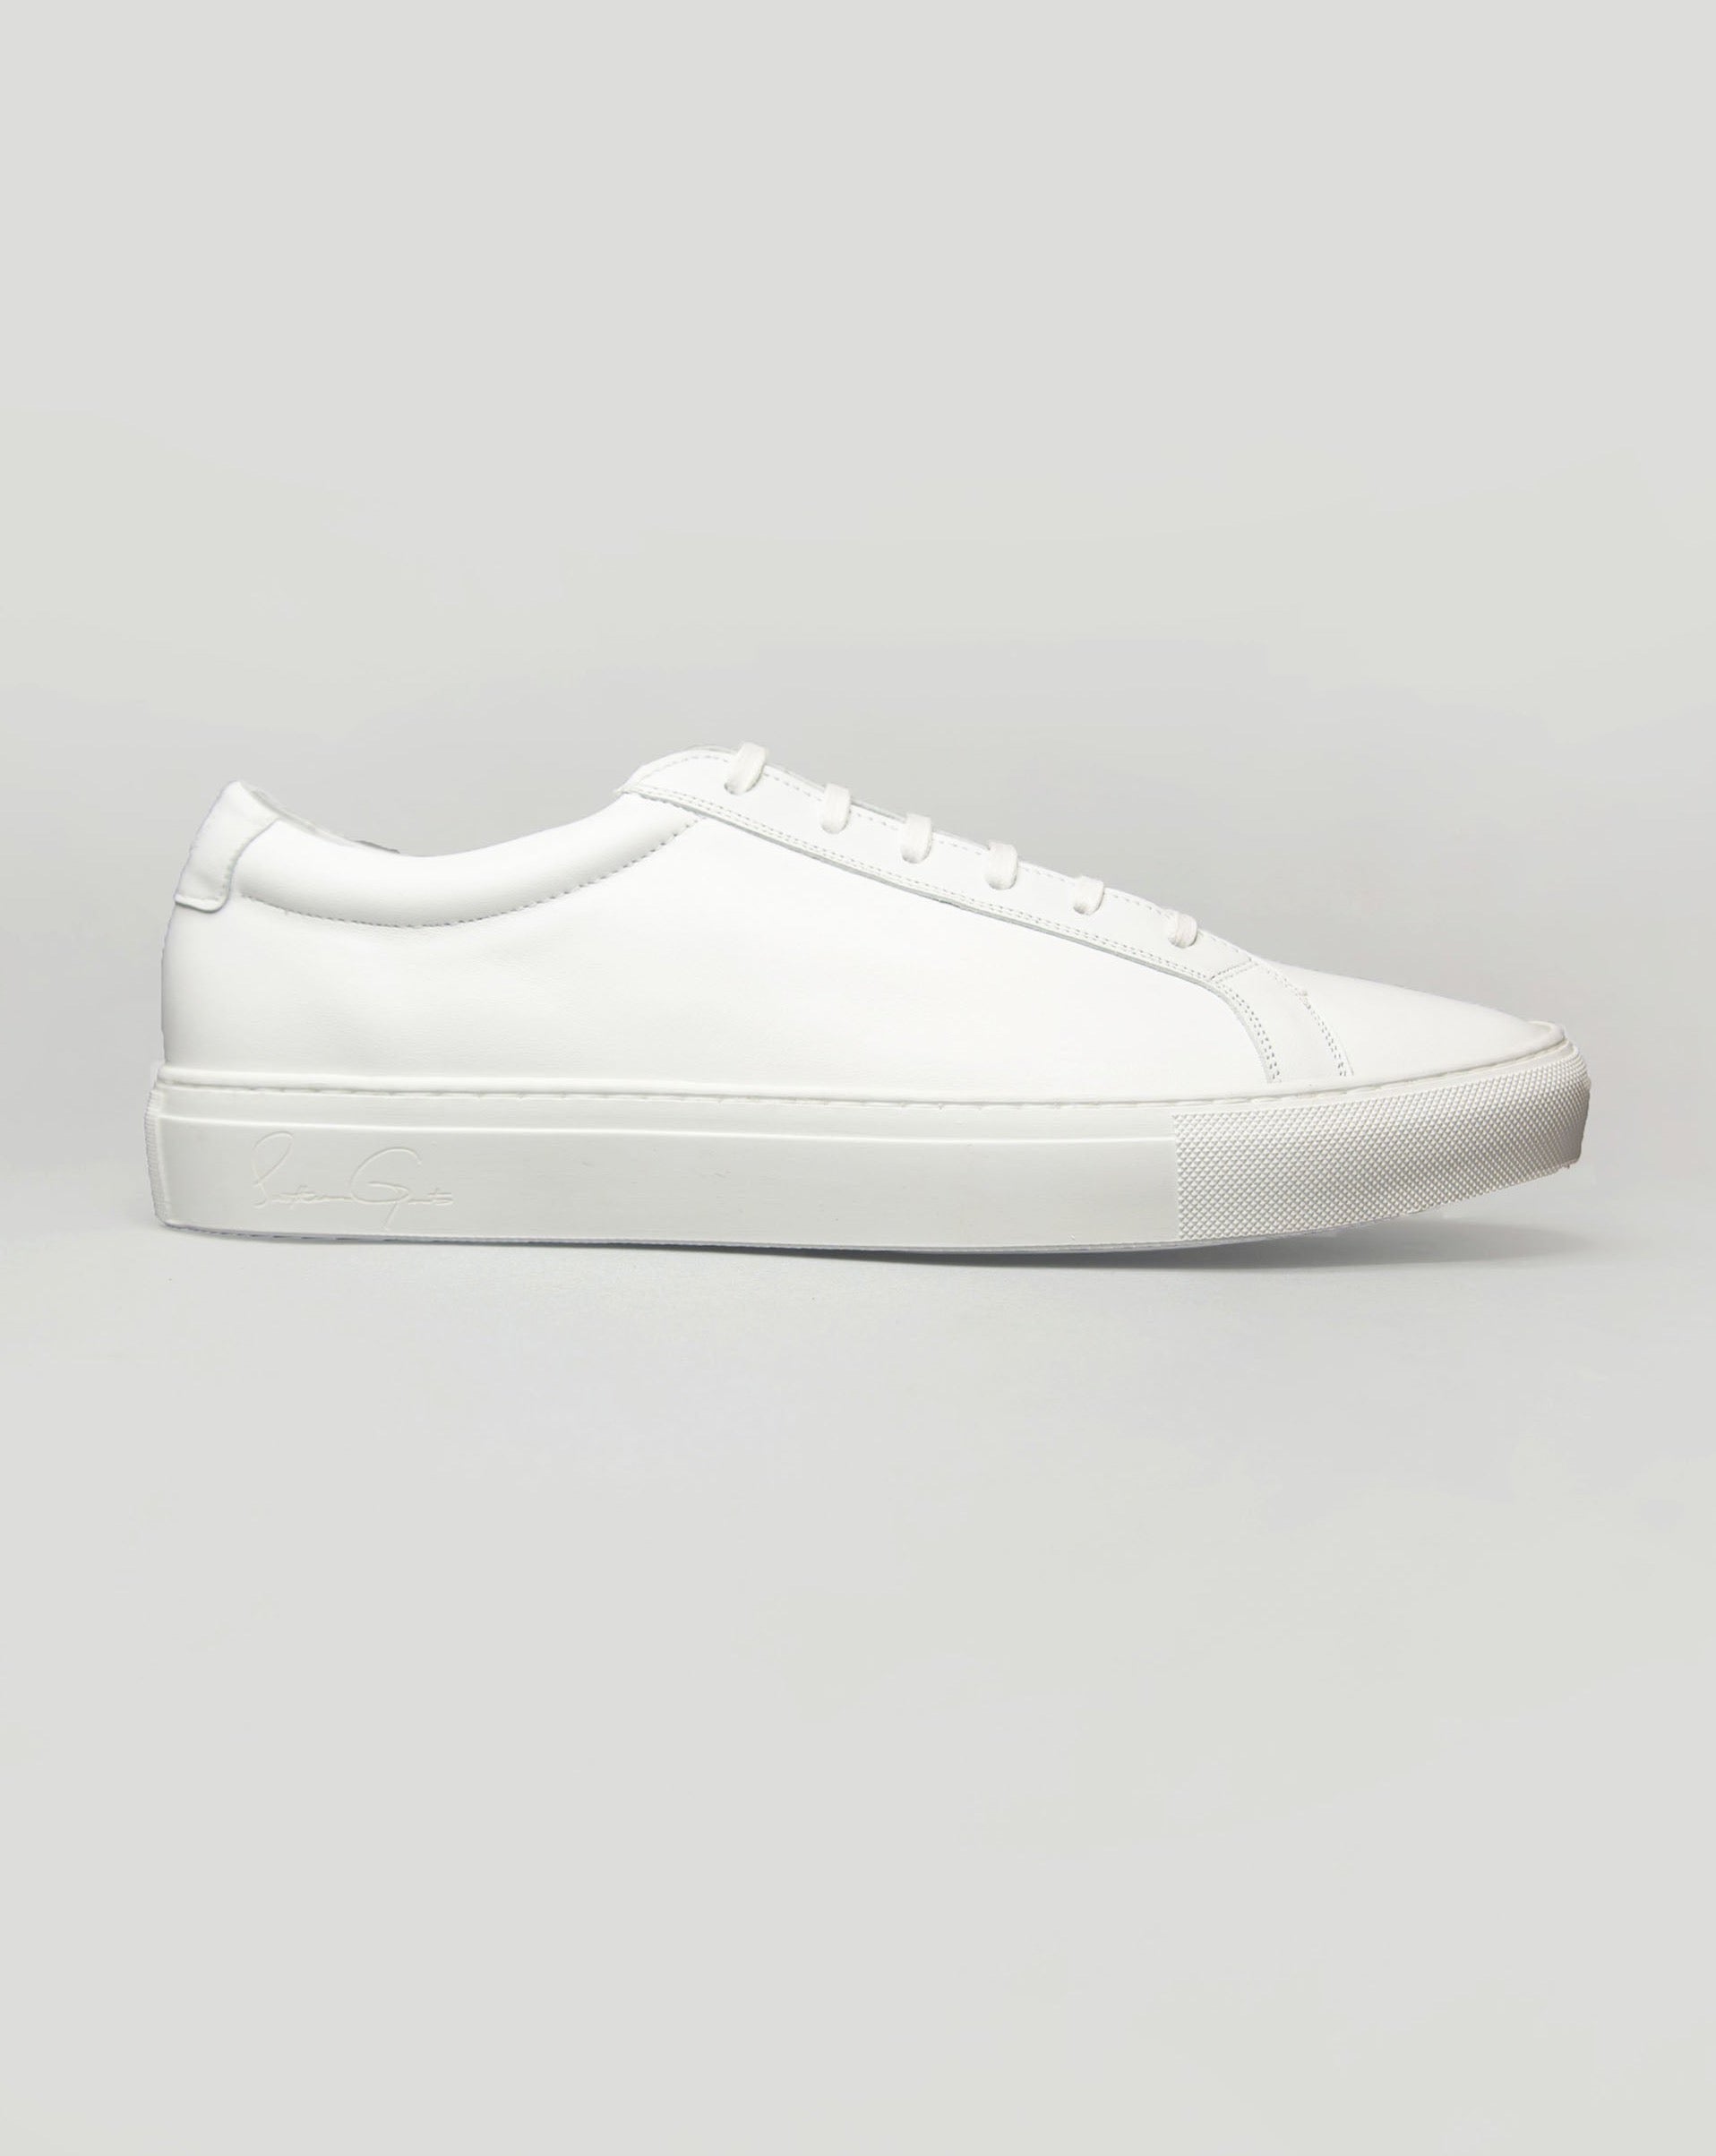 Buy Gola mens Grandslam Classic sneakers in white/khaki/navy at gola